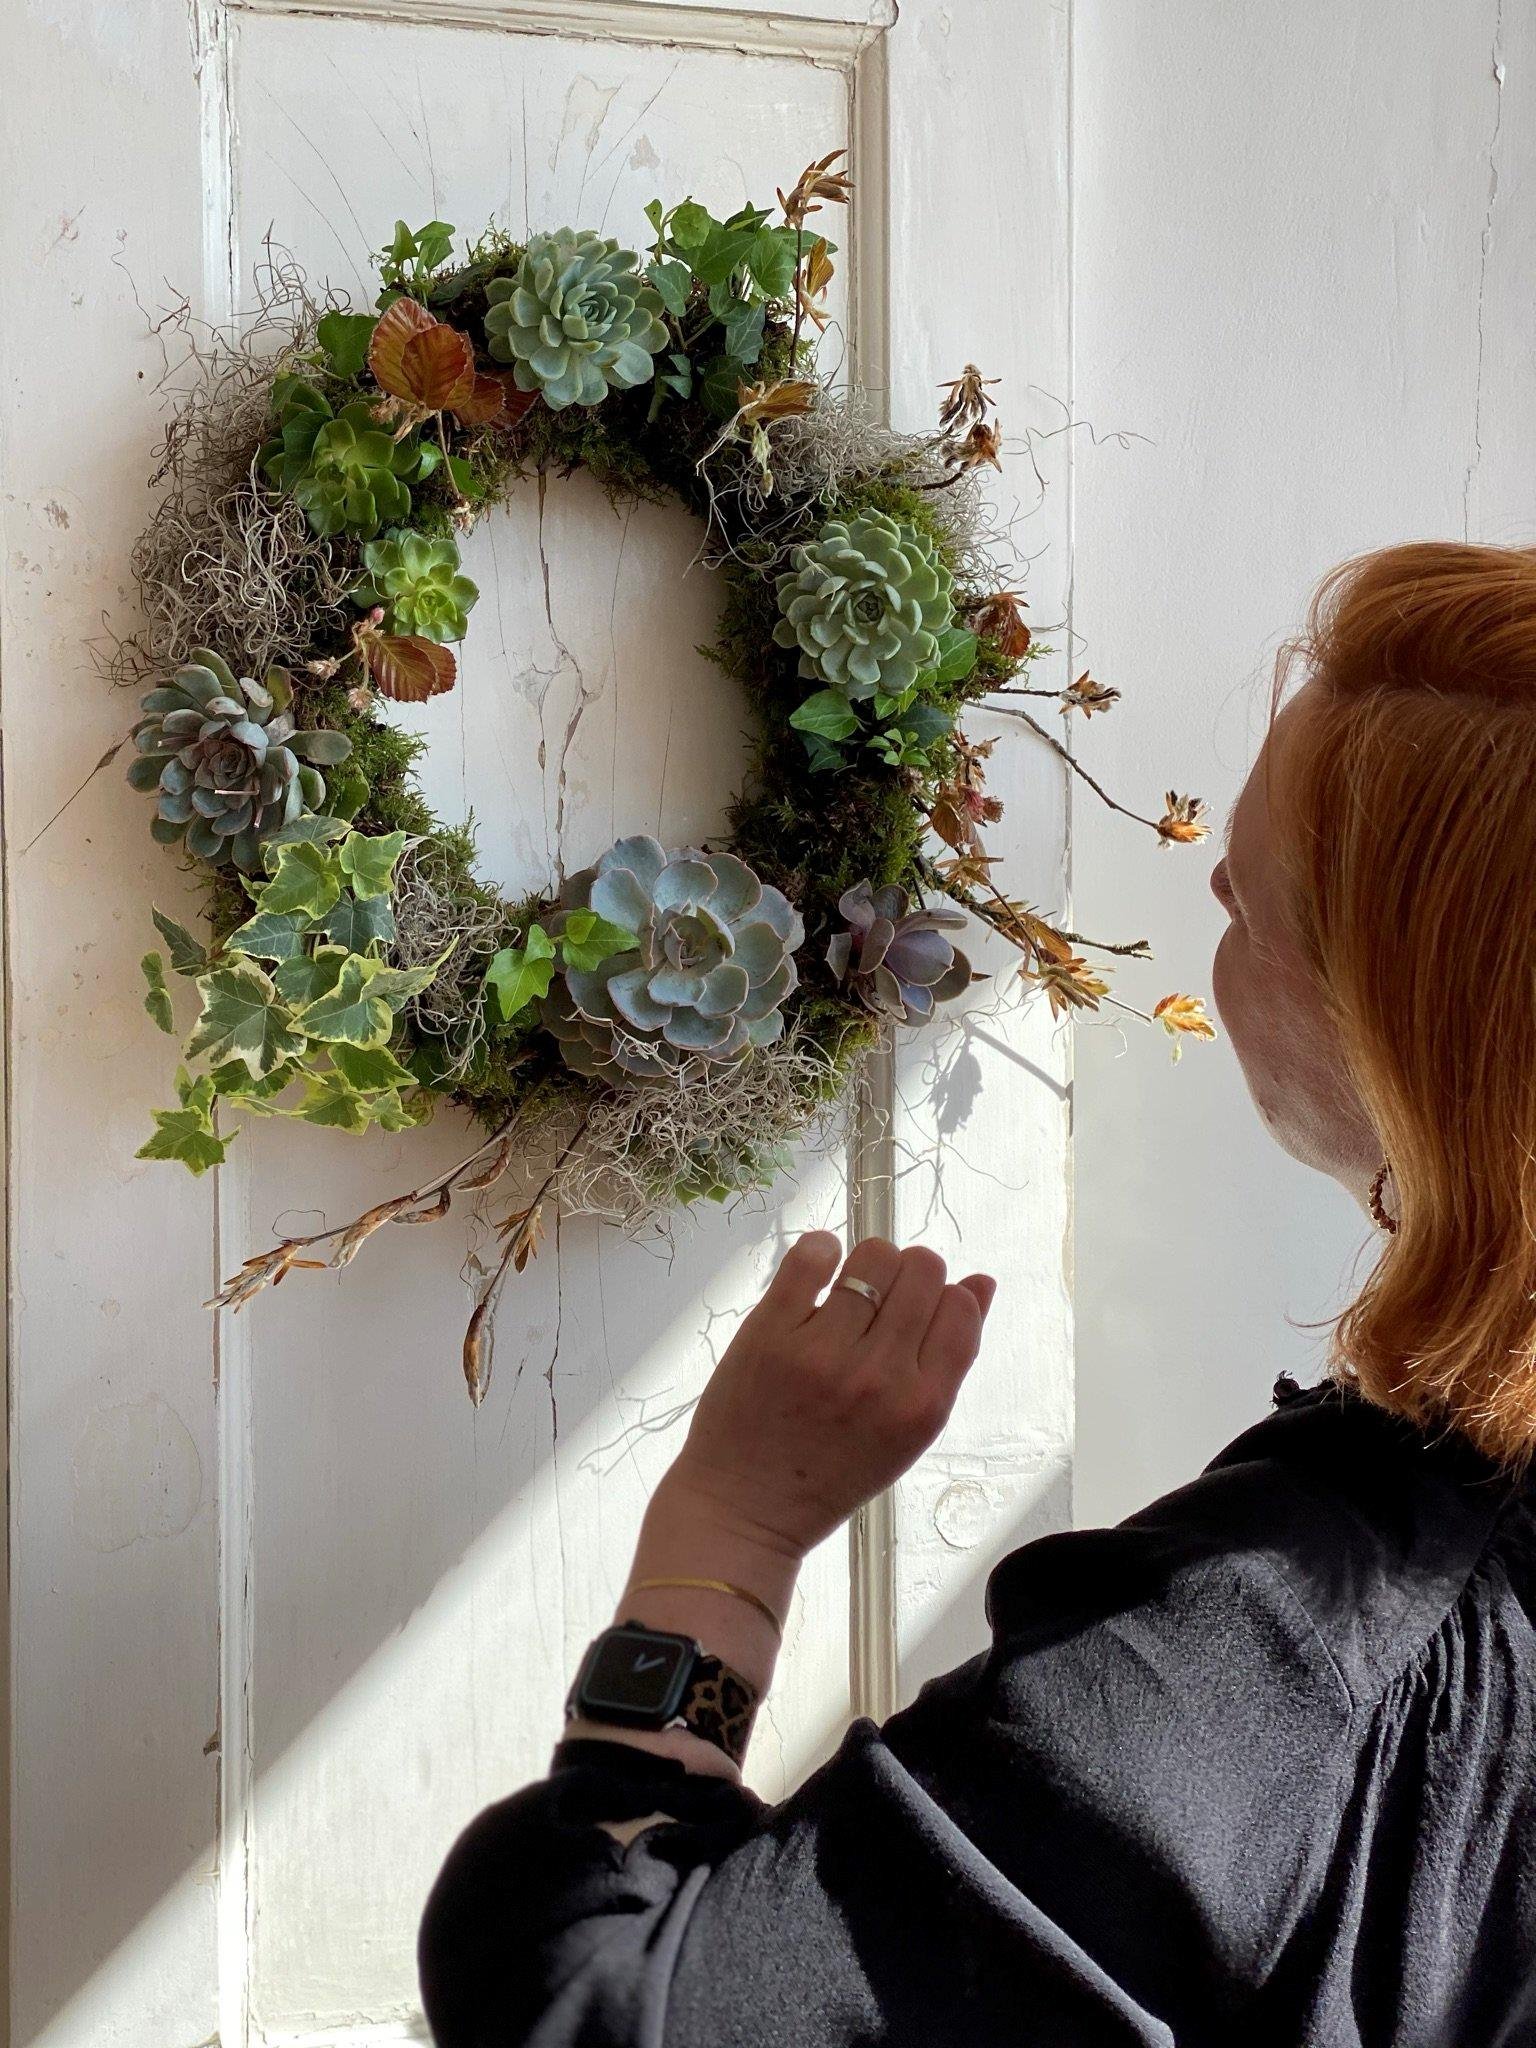 Bath flower school teacher tending to a living wreath 